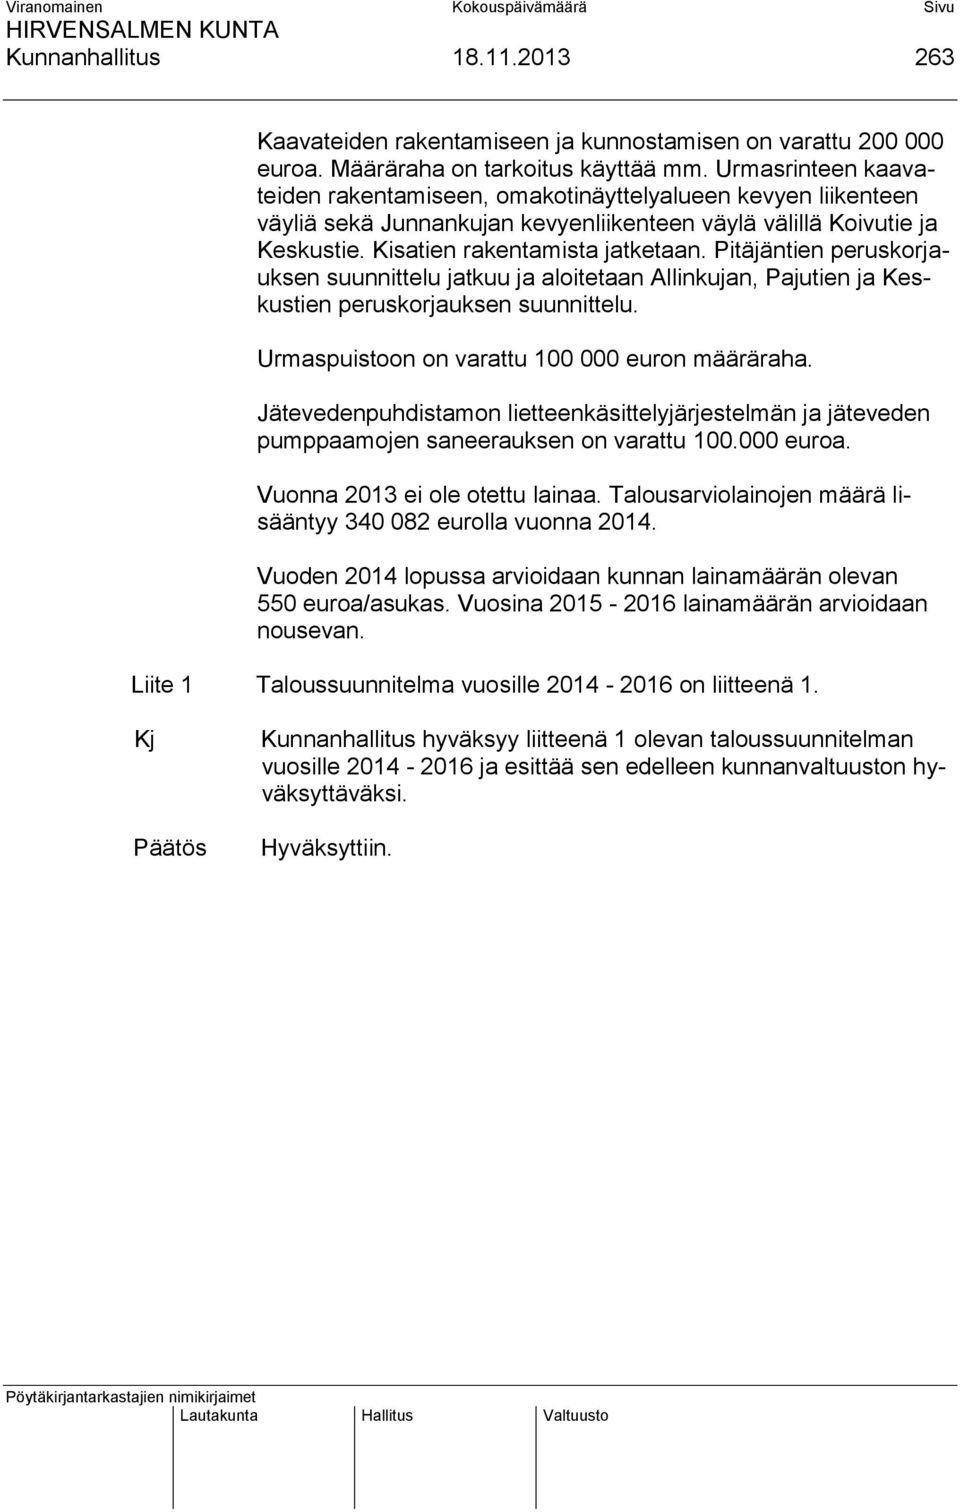 Pitäjäntien peruskorjauksen suunnittelu jatkuu ja aloitetaan Allinkujan, Pajutien ja Keskustien peruskorjauksen suunnittelu. Urmaspuistoon on varattu 100 000 euron määräraha.